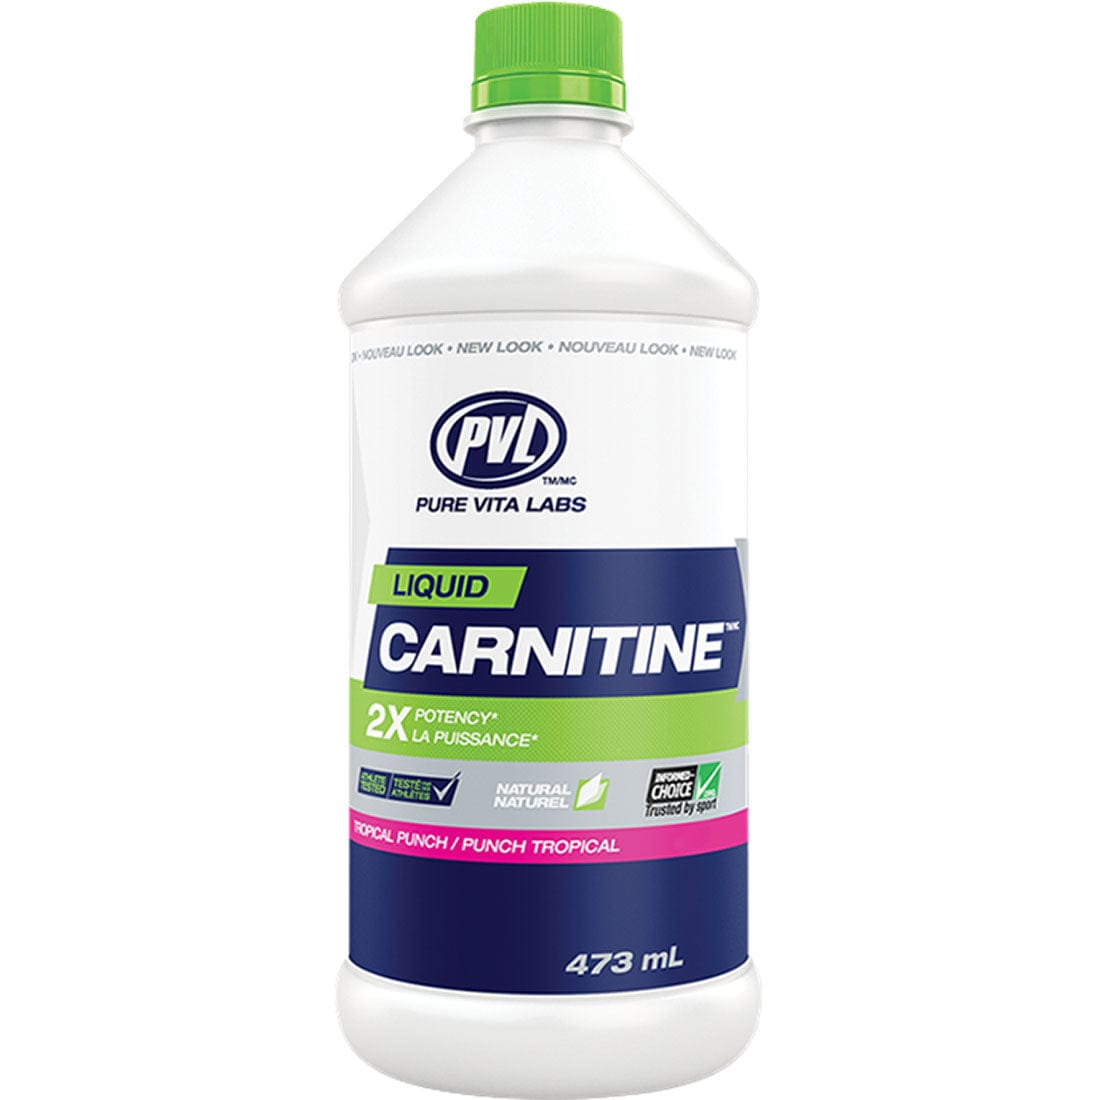 PVL Liquid Carnitine 473mL, Tropical Punch